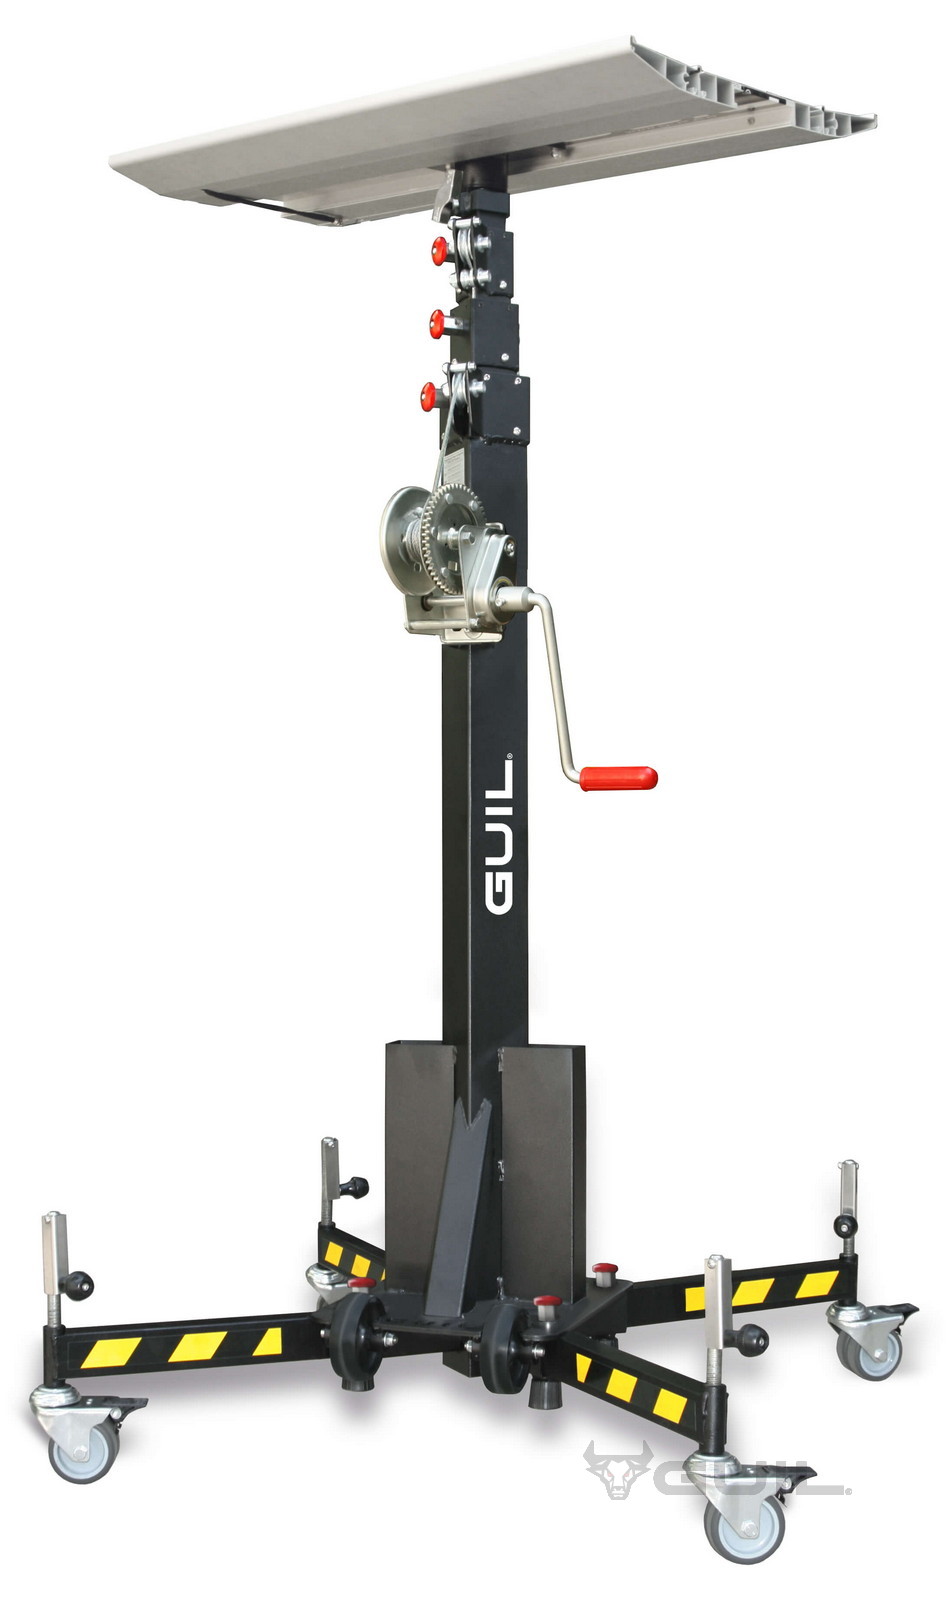 GUIL-materiaallift-4.6m-125kg-verrijdbaar_ELC730R_4.jpg